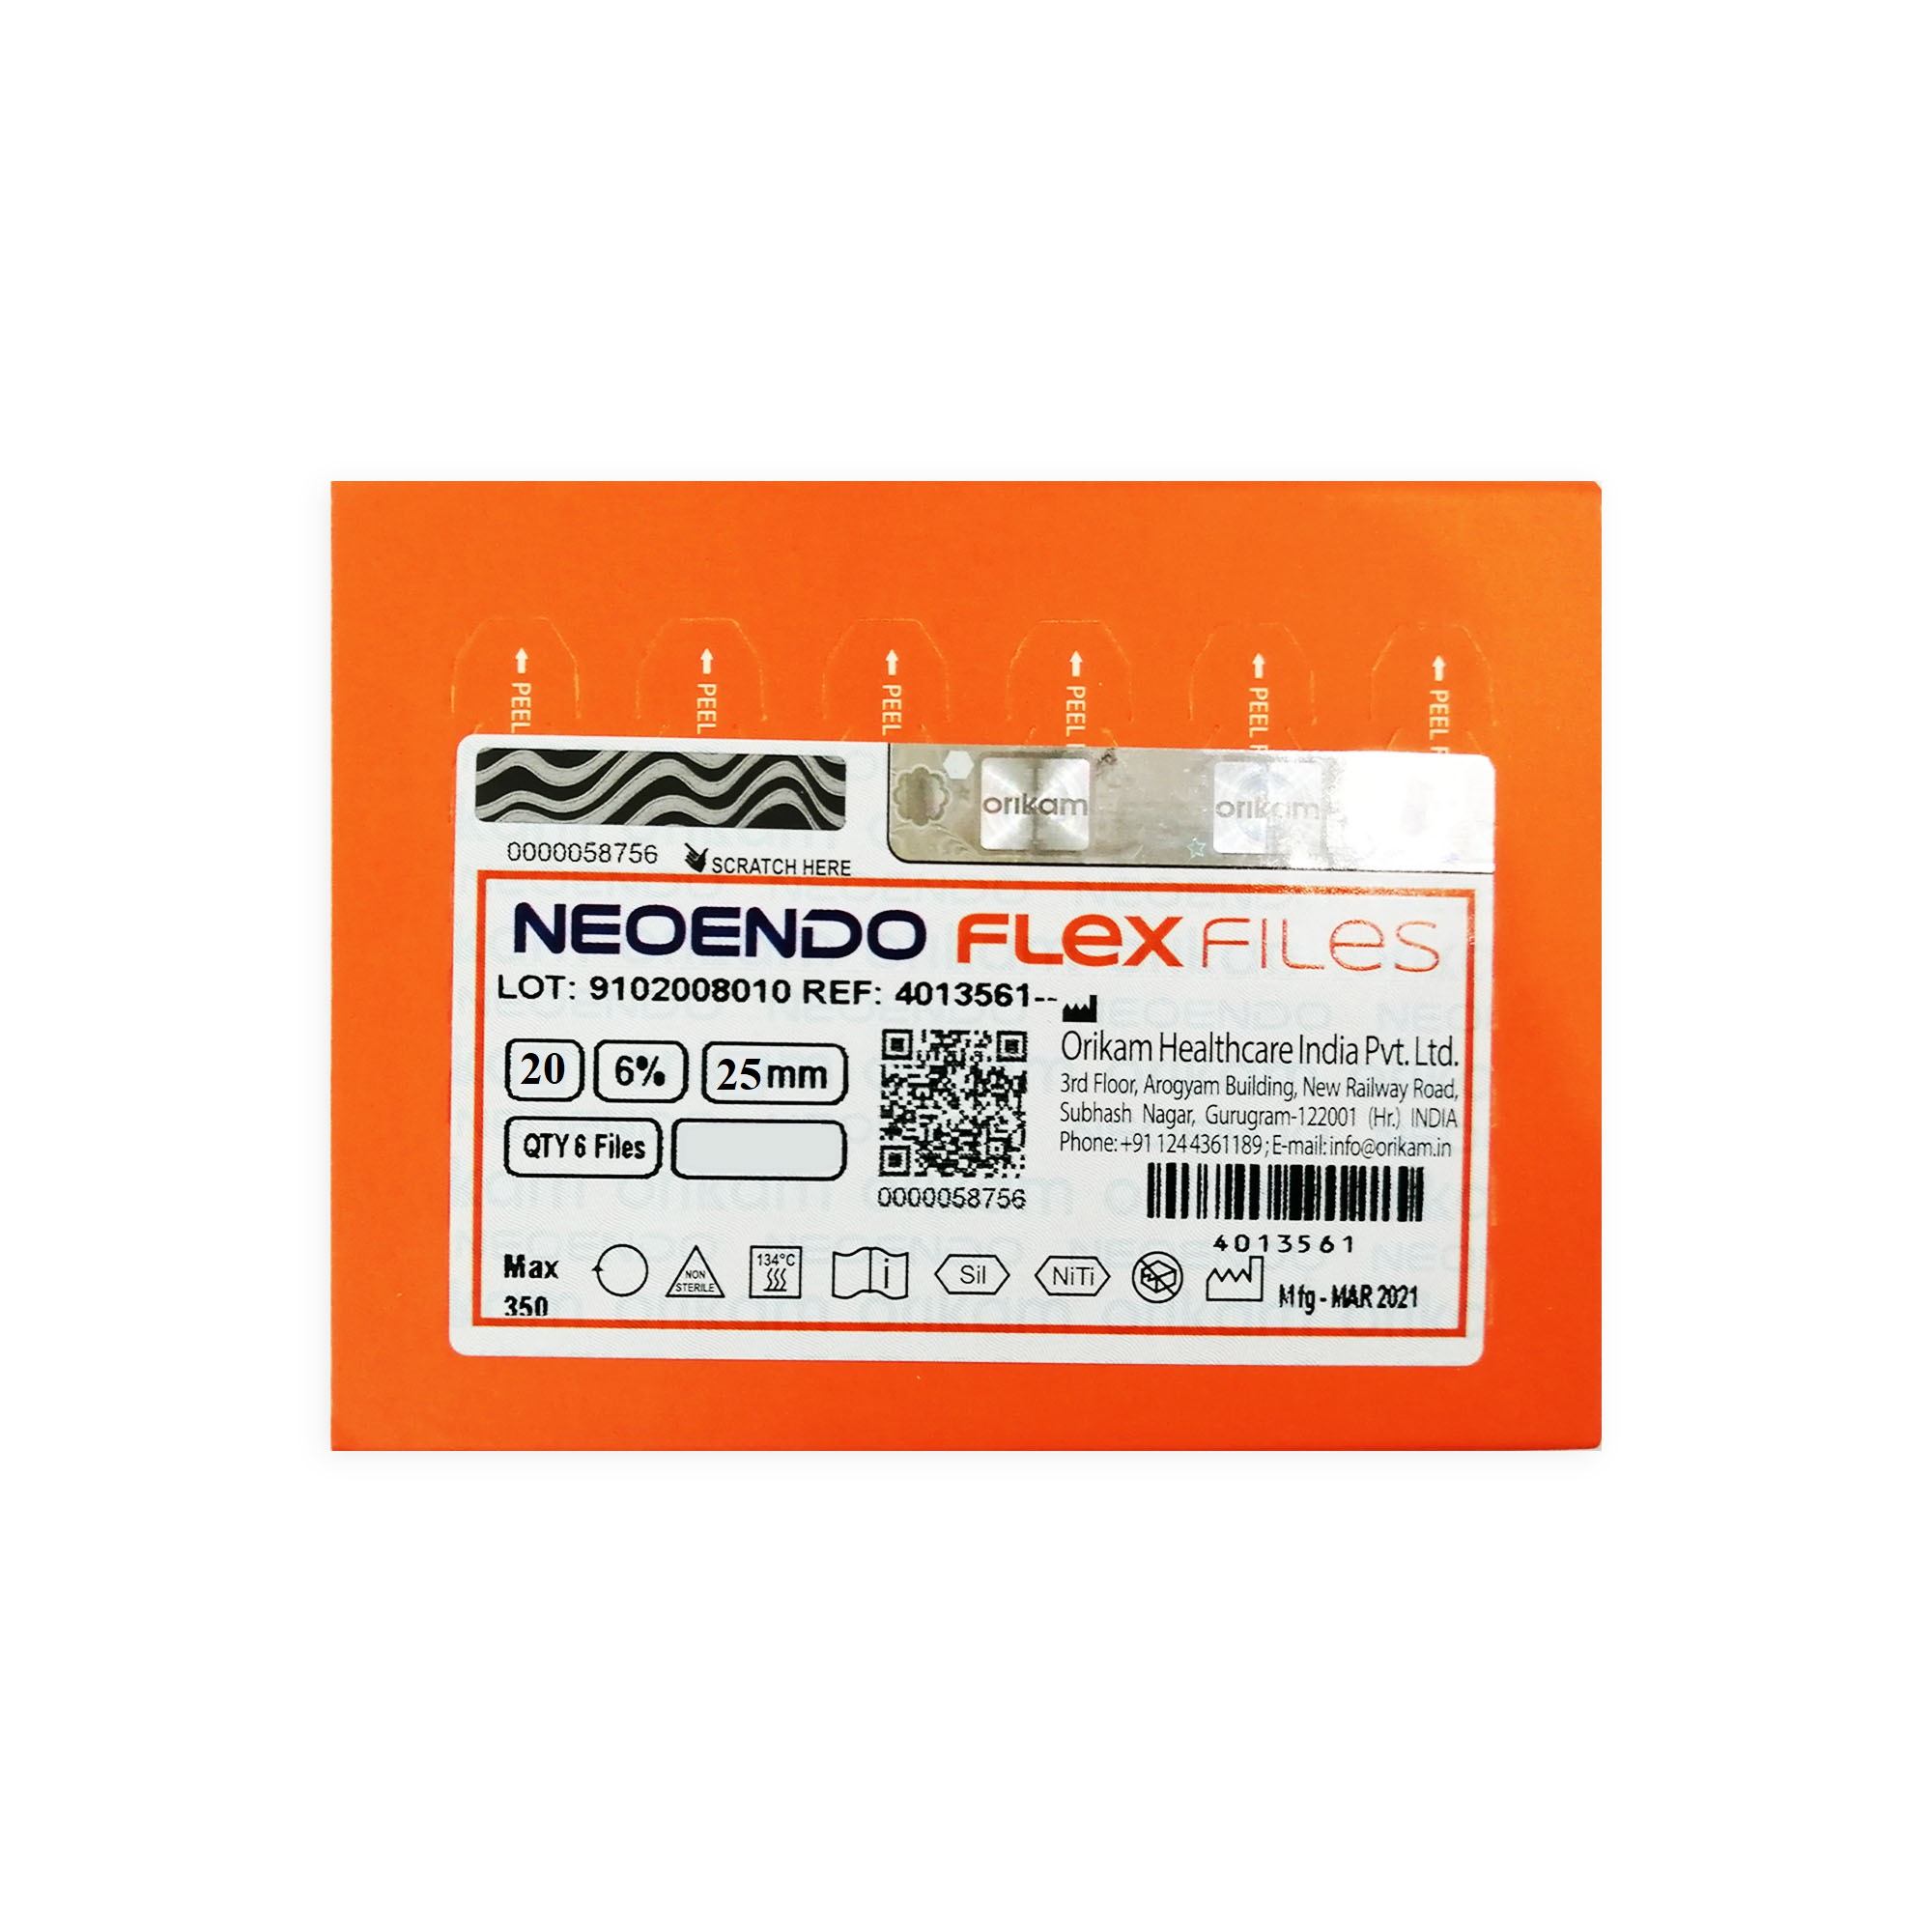 NeoEndo Flex Files 25mm 35/6 Endo Rotary Files